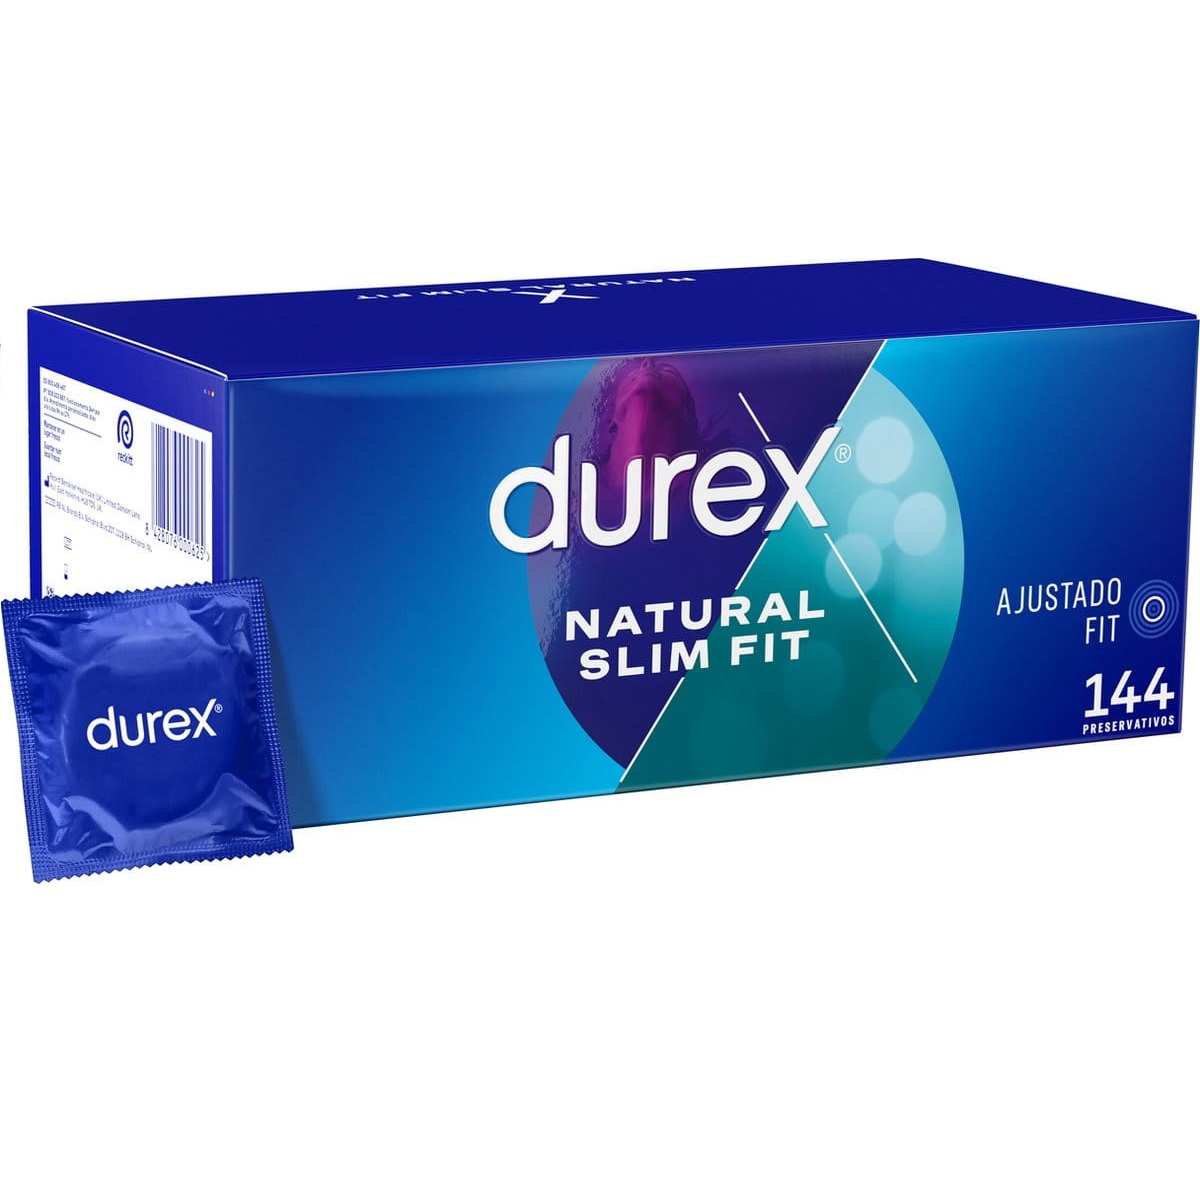 Durex - Durex - Condones para hombre, Paquete de 144 condones para un sexo seguro. Natural, Sensitivo Suave, Saboréame y Natural Slim Fit